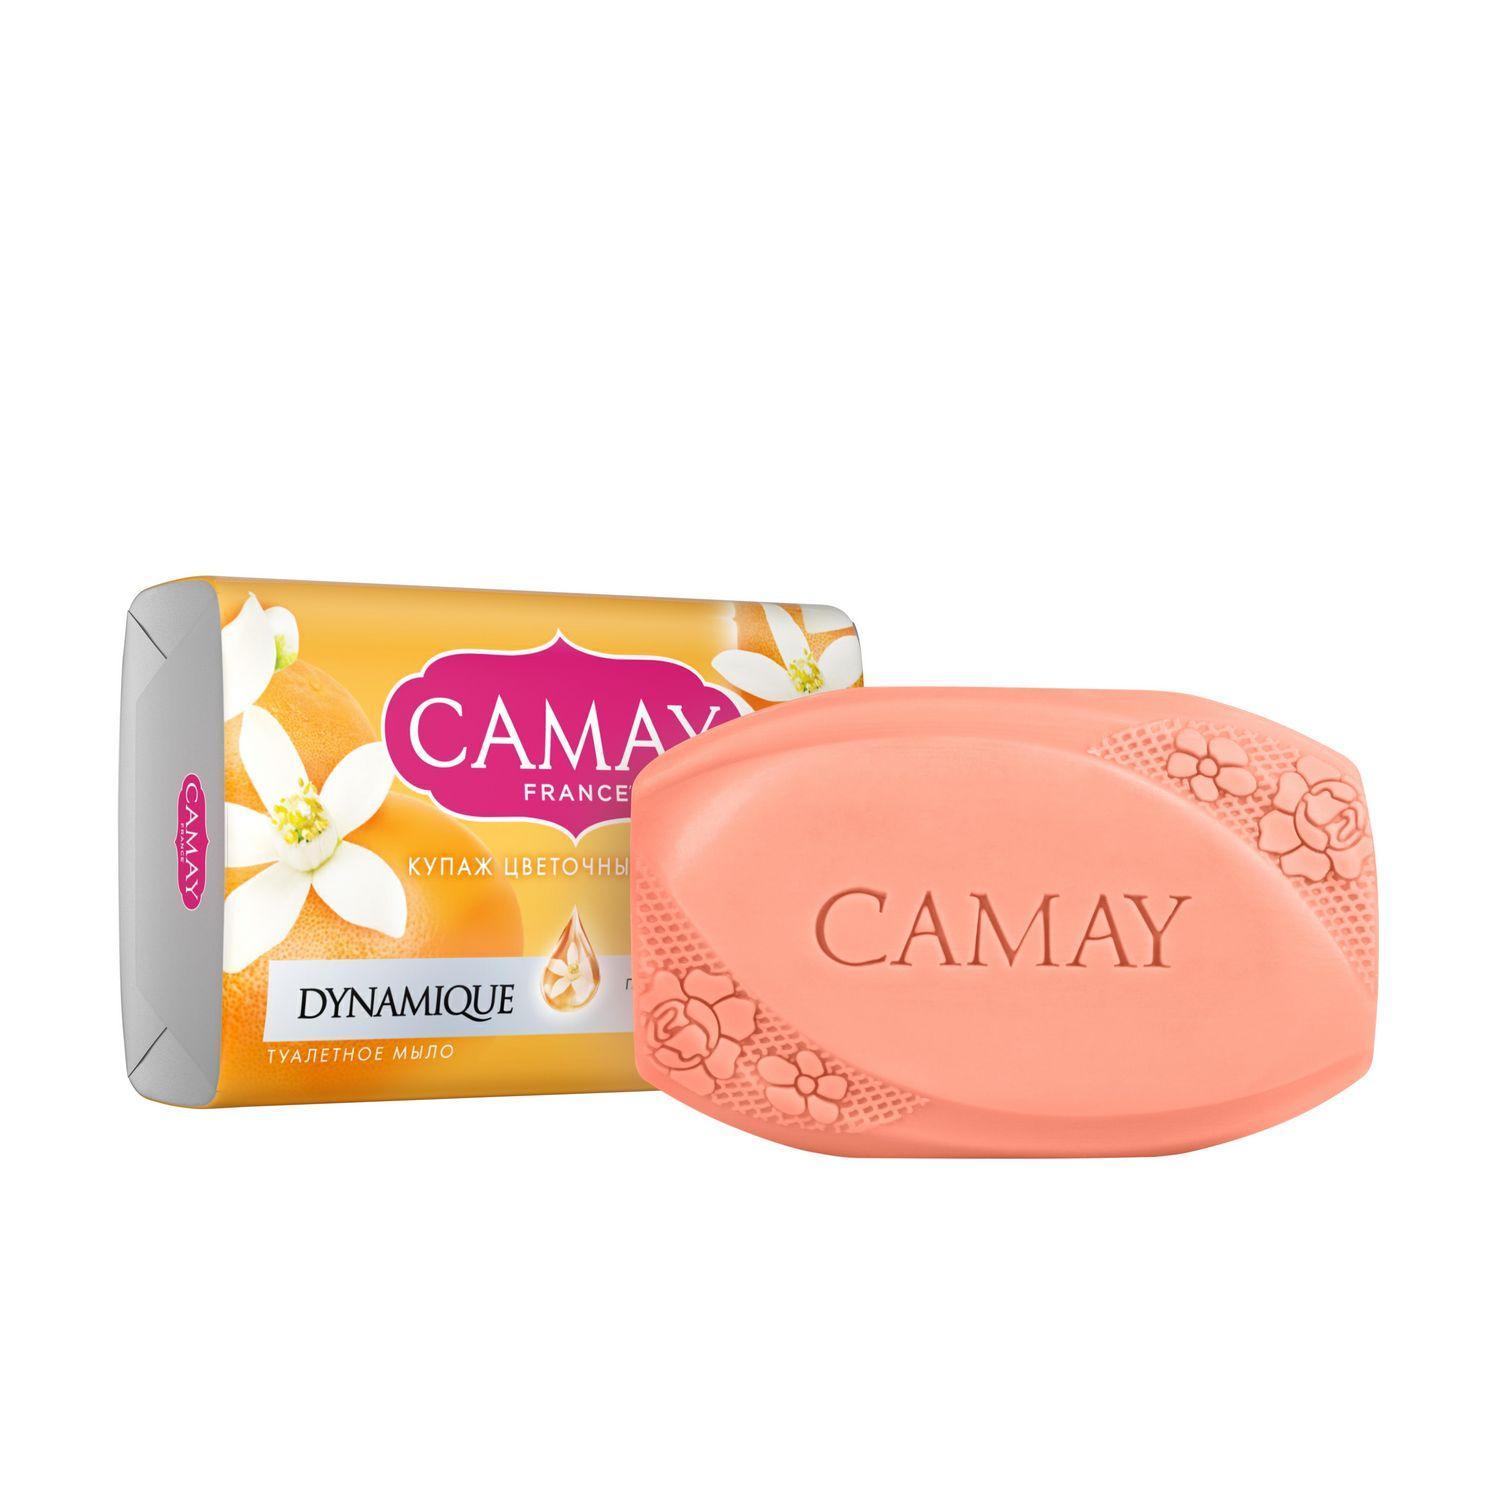 Мыло Camay Dynamique Grapefruit Динамик туалетное